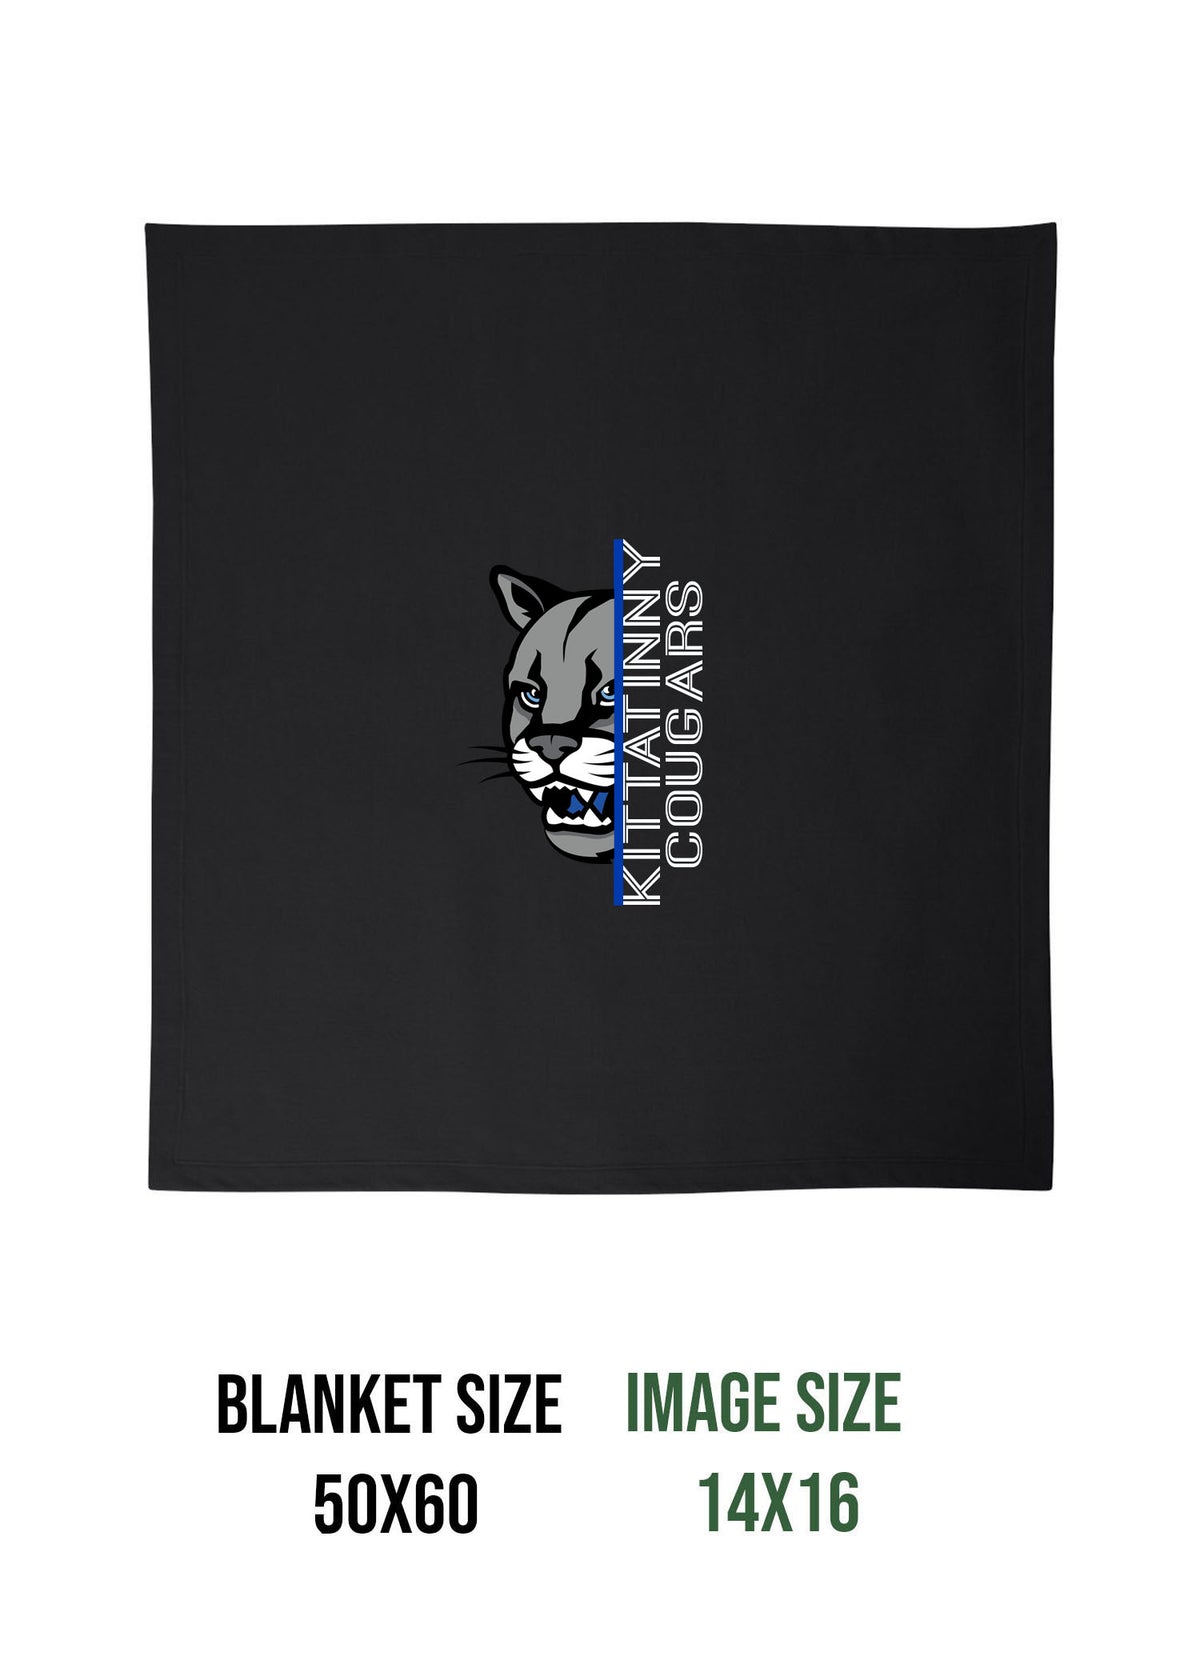 KRHS Design 3 Blanket